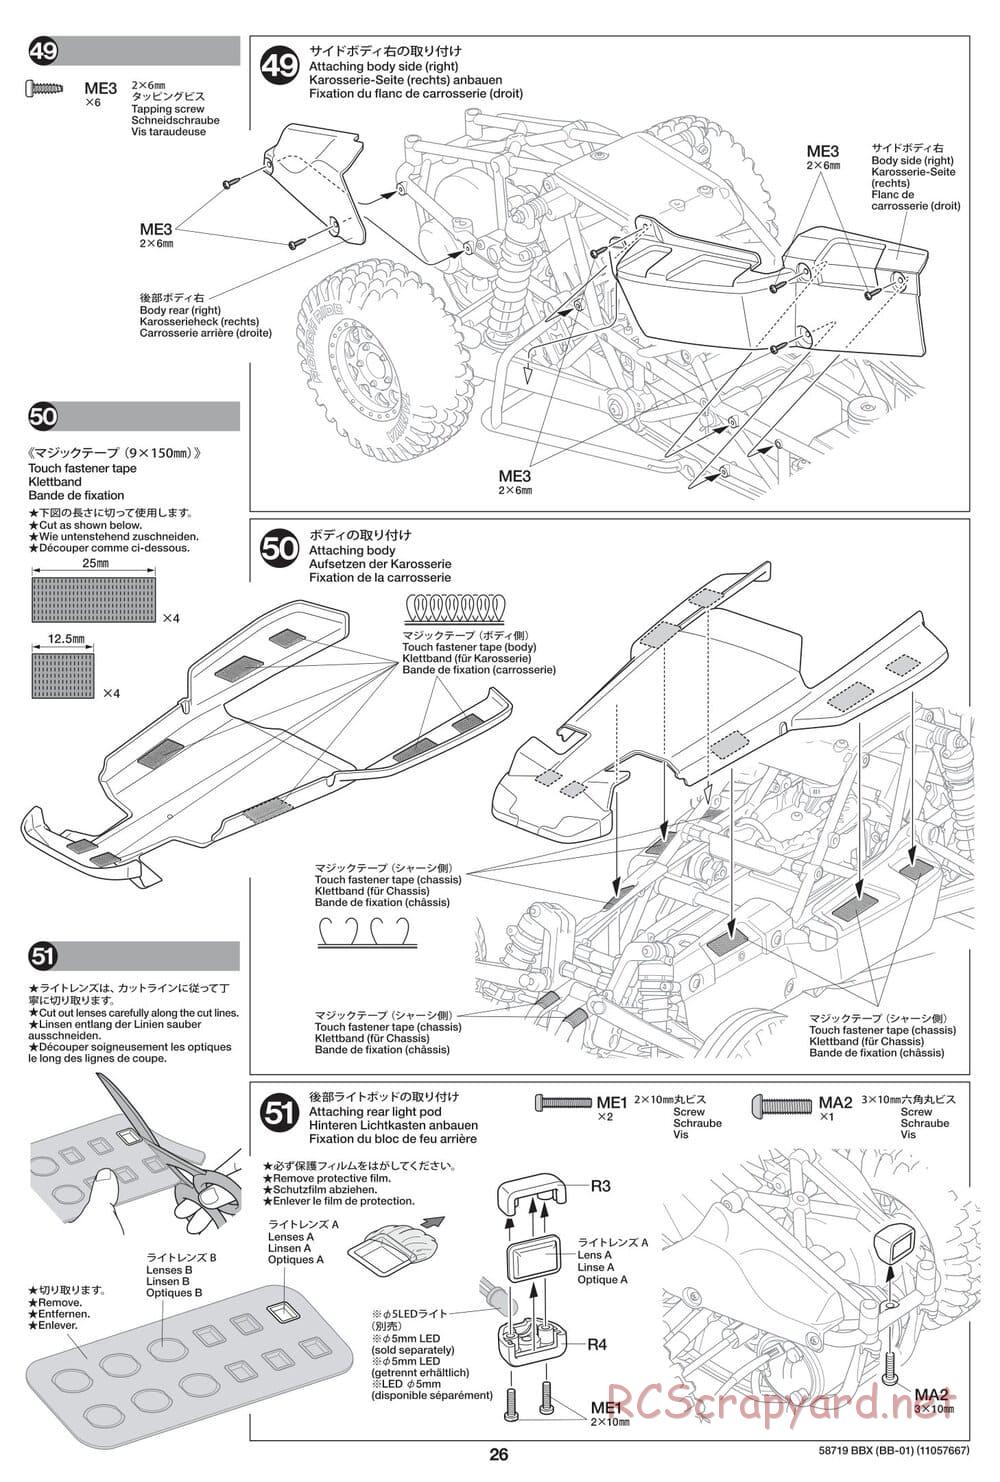 Tamiya - BBX - BB-01 Chassis - Manual - Page 26